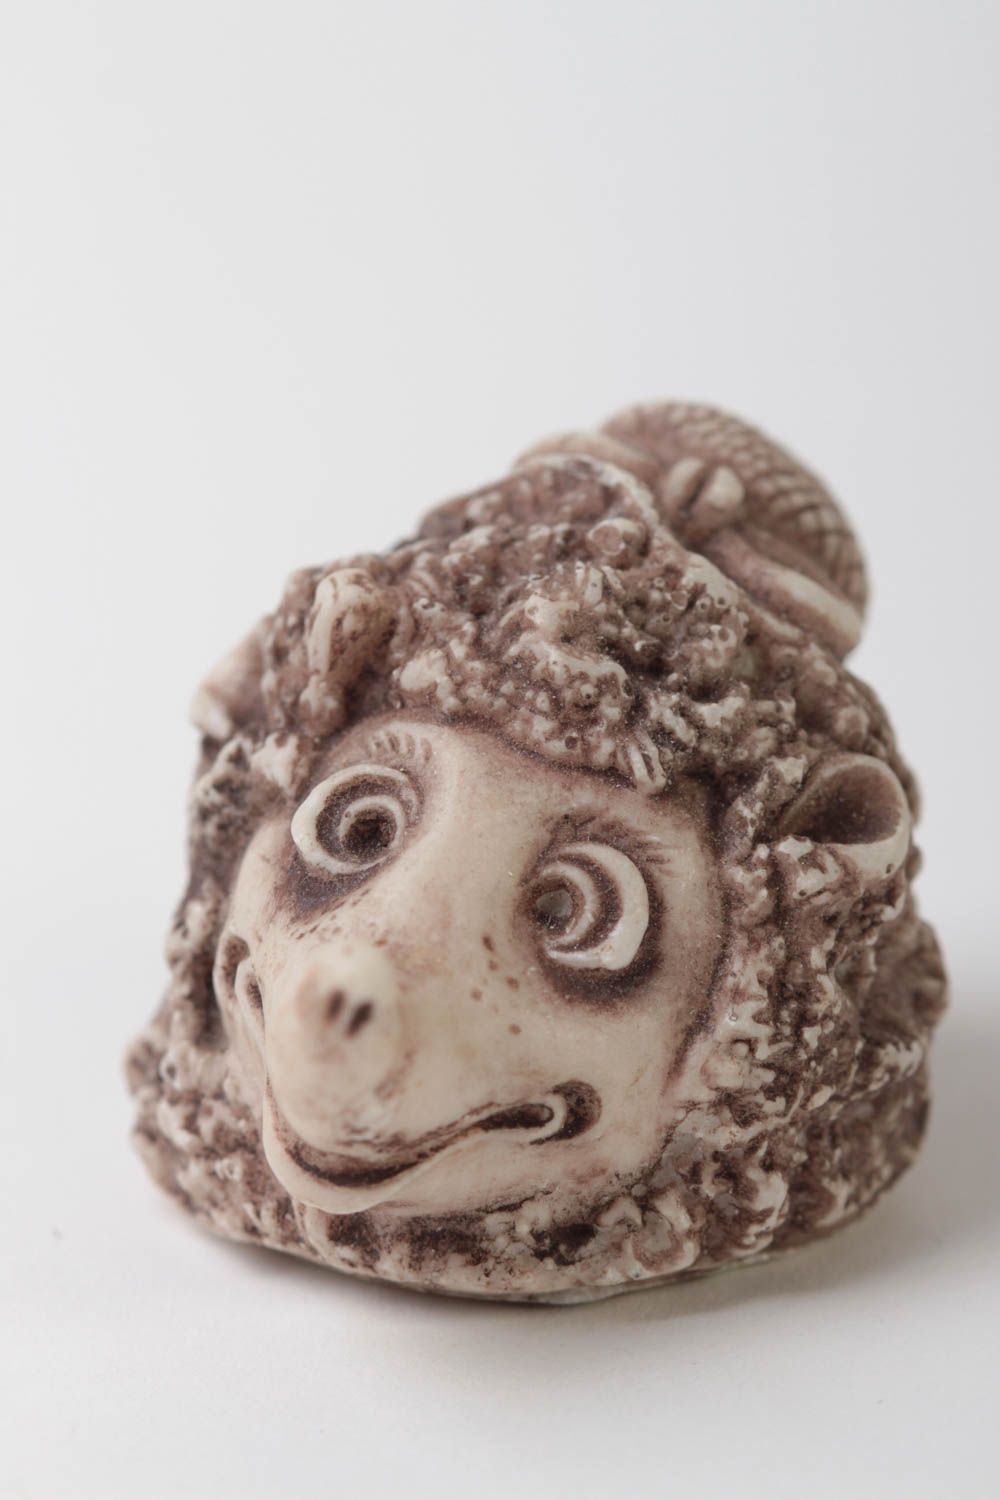 Миниатюрная фигурка из полимерной смолы в виде ежика в шляпке для декора фото 2